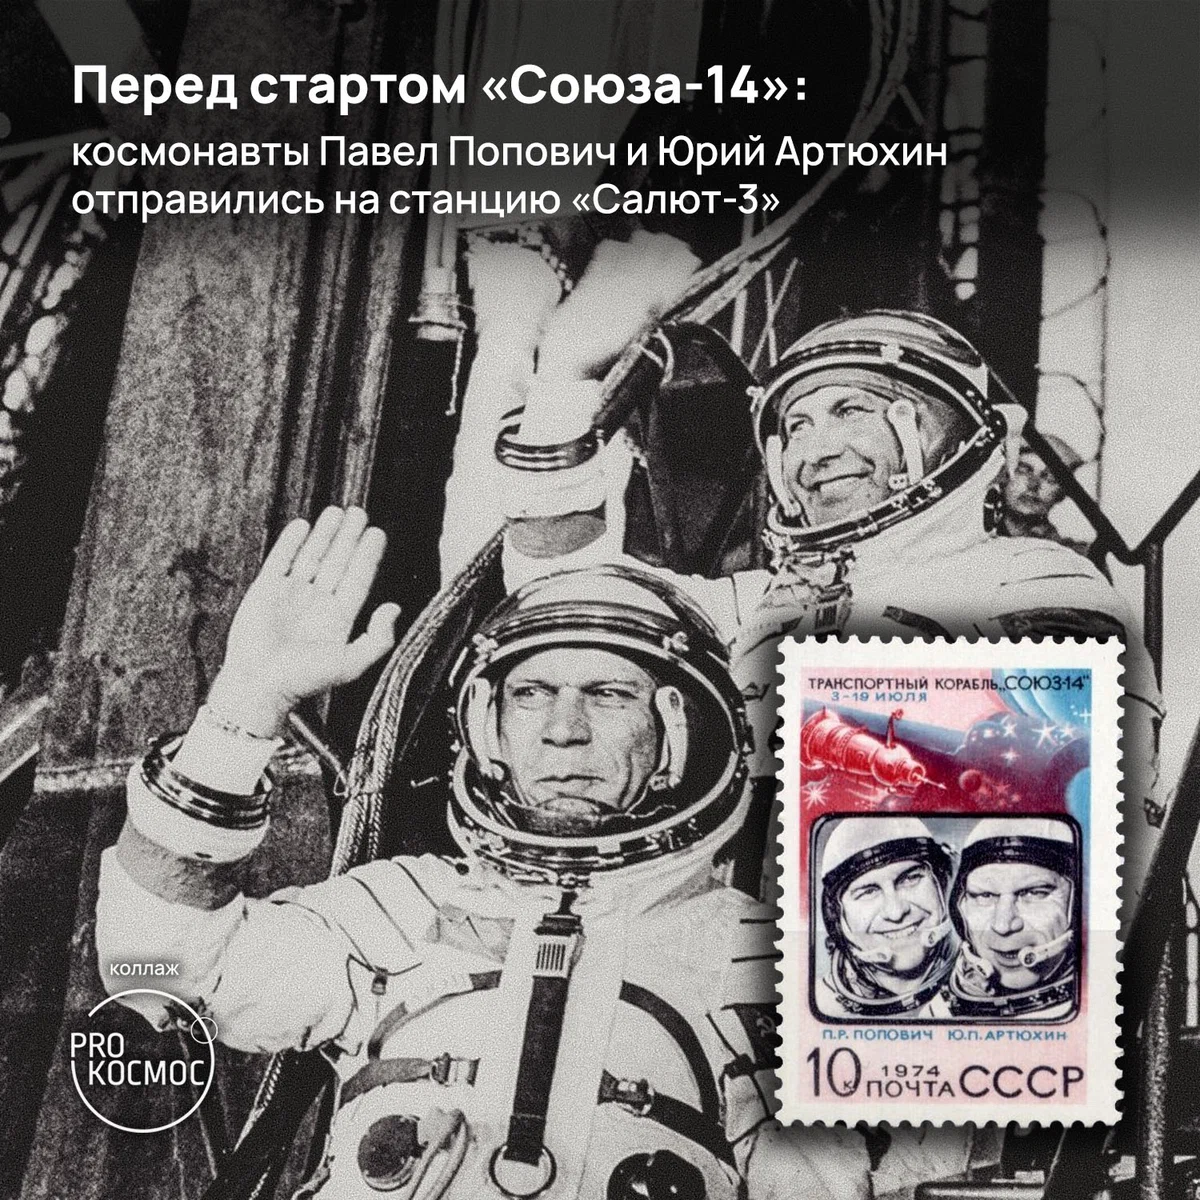 Четвёртый космонавт СССР: Павел Попович — участник первого парного полёта и первого штатного полёта на орбитальную станцию height=1200px width=1200px